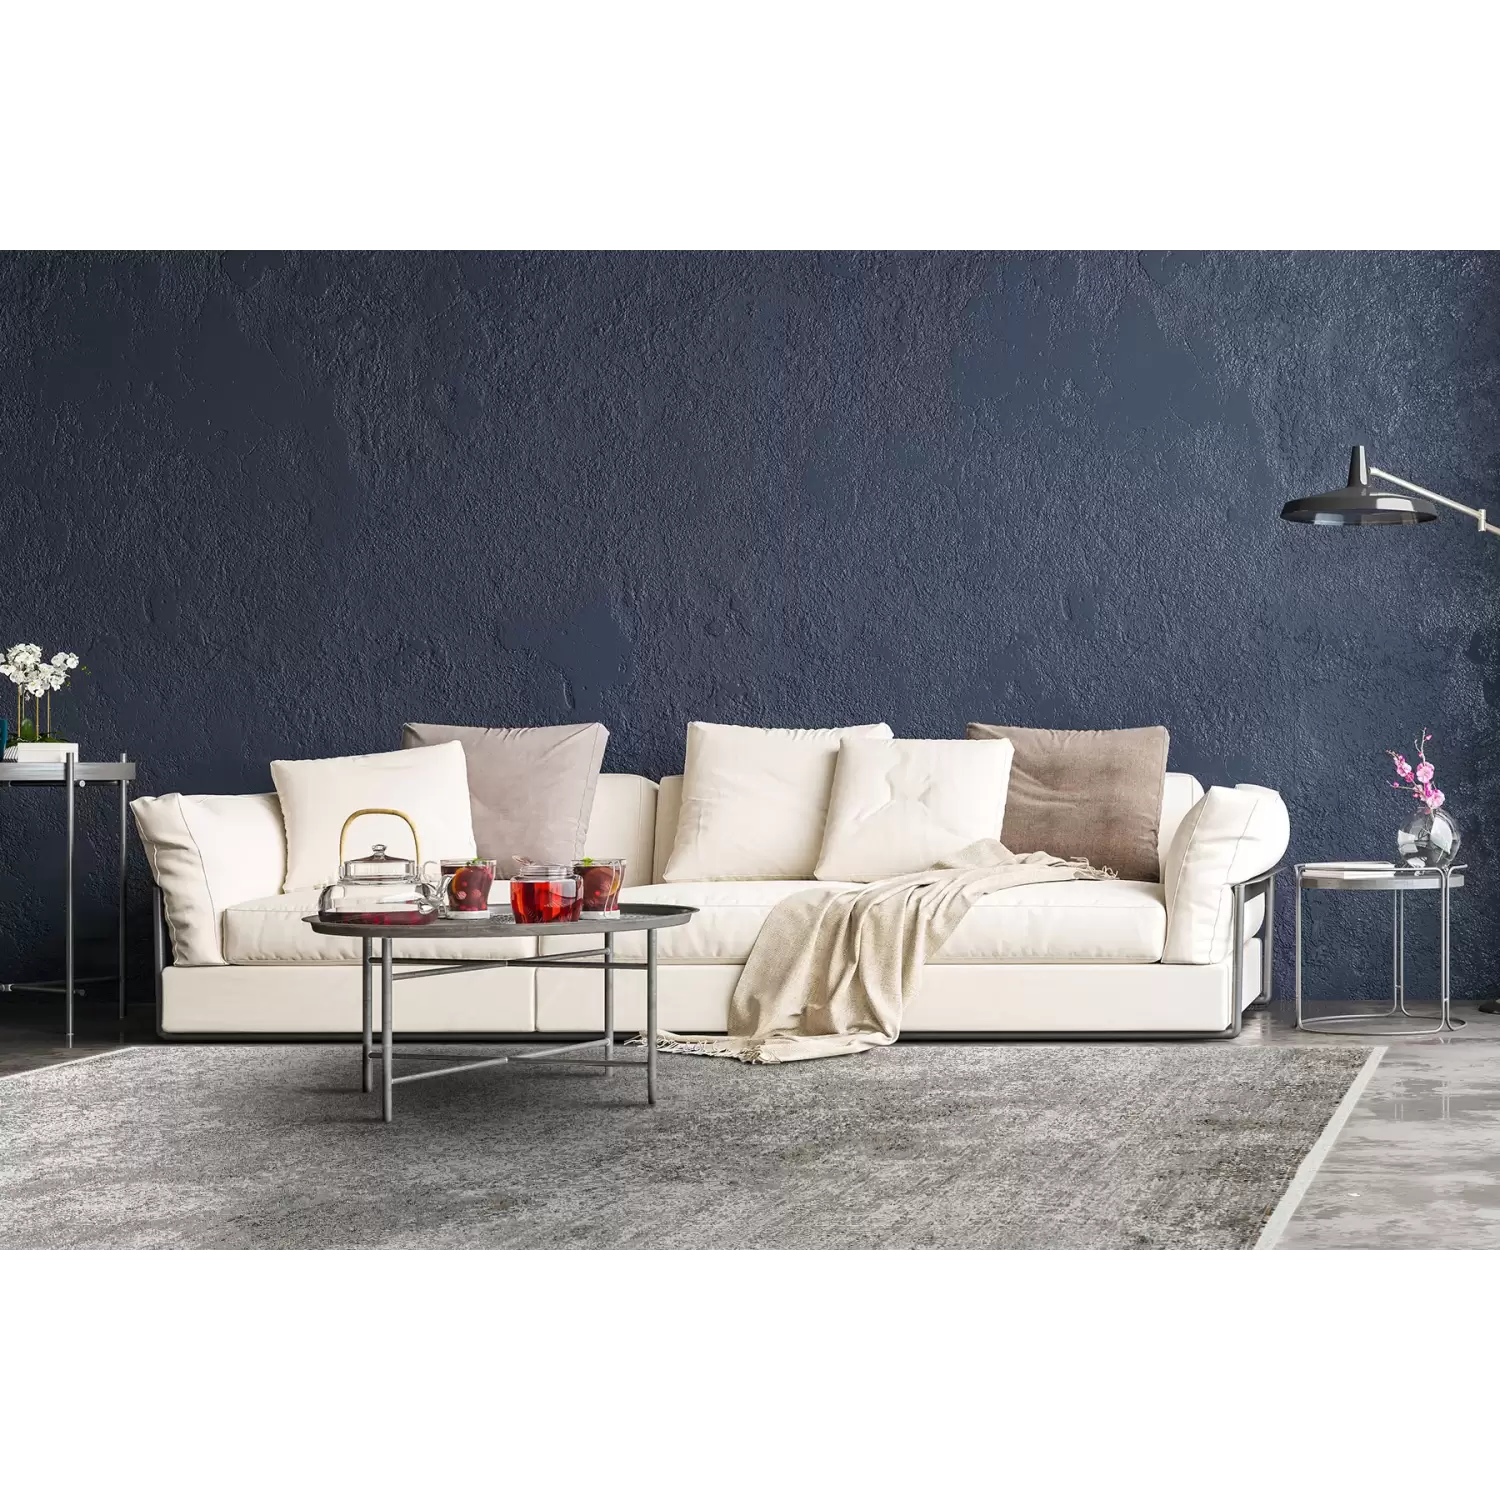 Eko Halı Fresco Fs 10 Cream Grey Xw Modern Salon Halısı